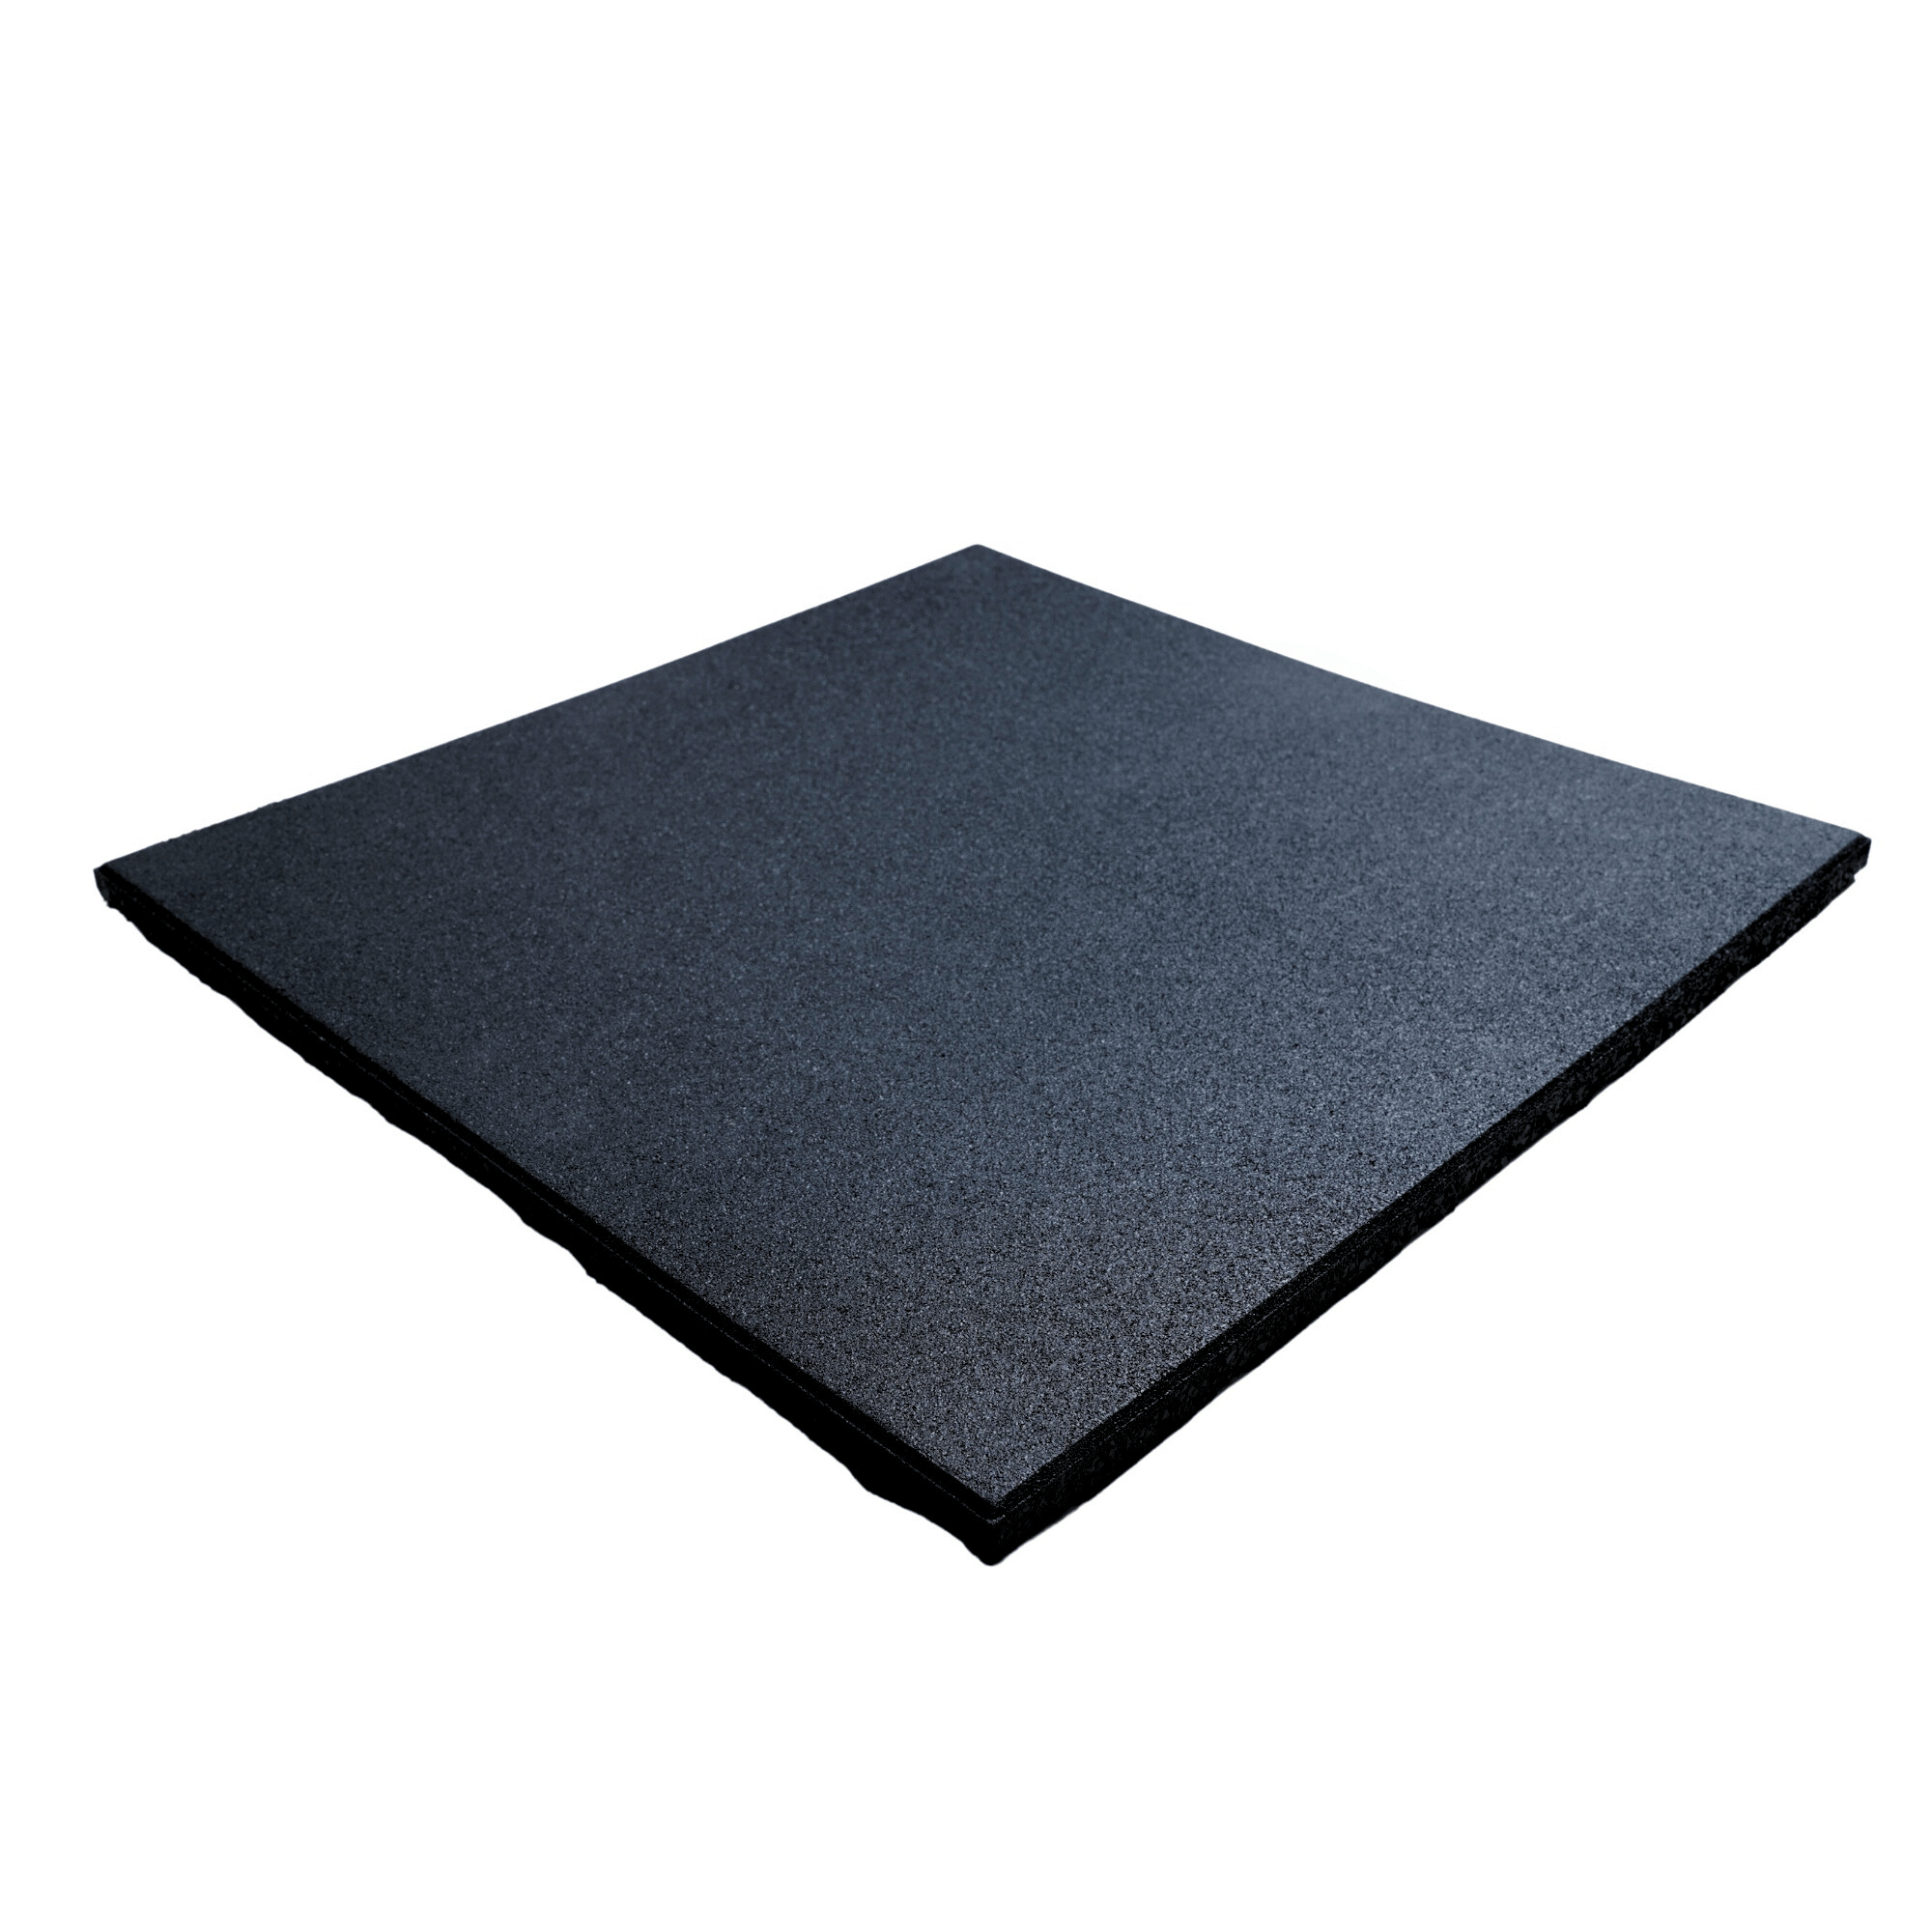 OVERDRIVE Rubber Gym Mat Flooring Black 500MM x 500MM x 20MM